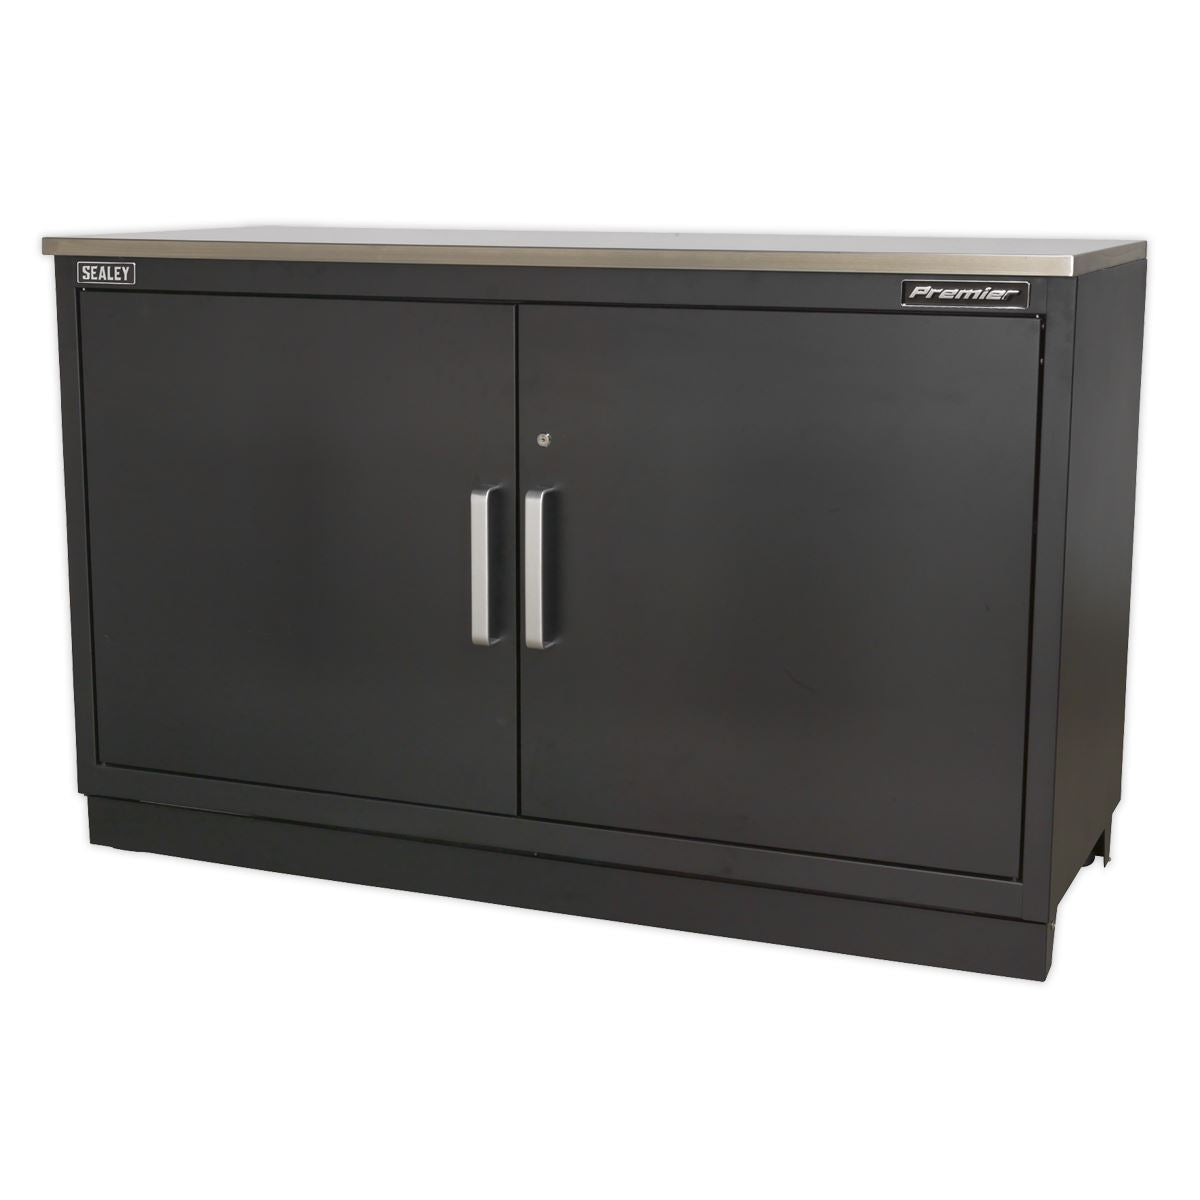 Sealey Premier Modular Floor Cabinet 2 Door 1550mm Heavy-Duty